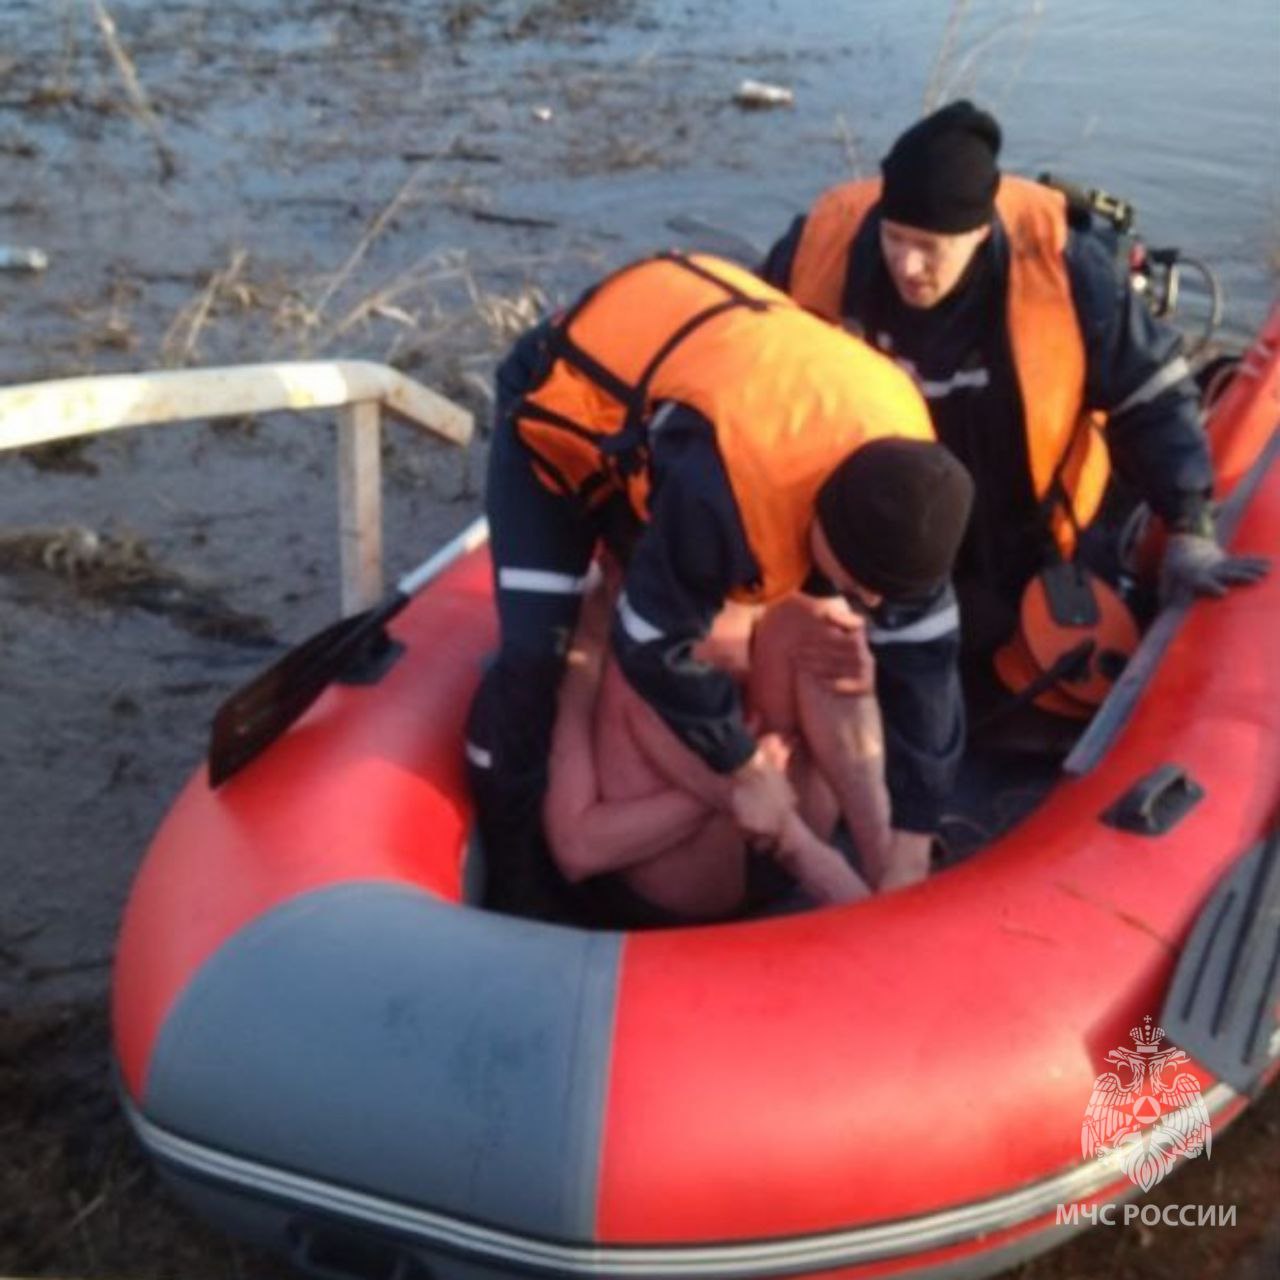 Спасатели достали мужчину из воды в Нижнем Новгороде: его доставили в больницу